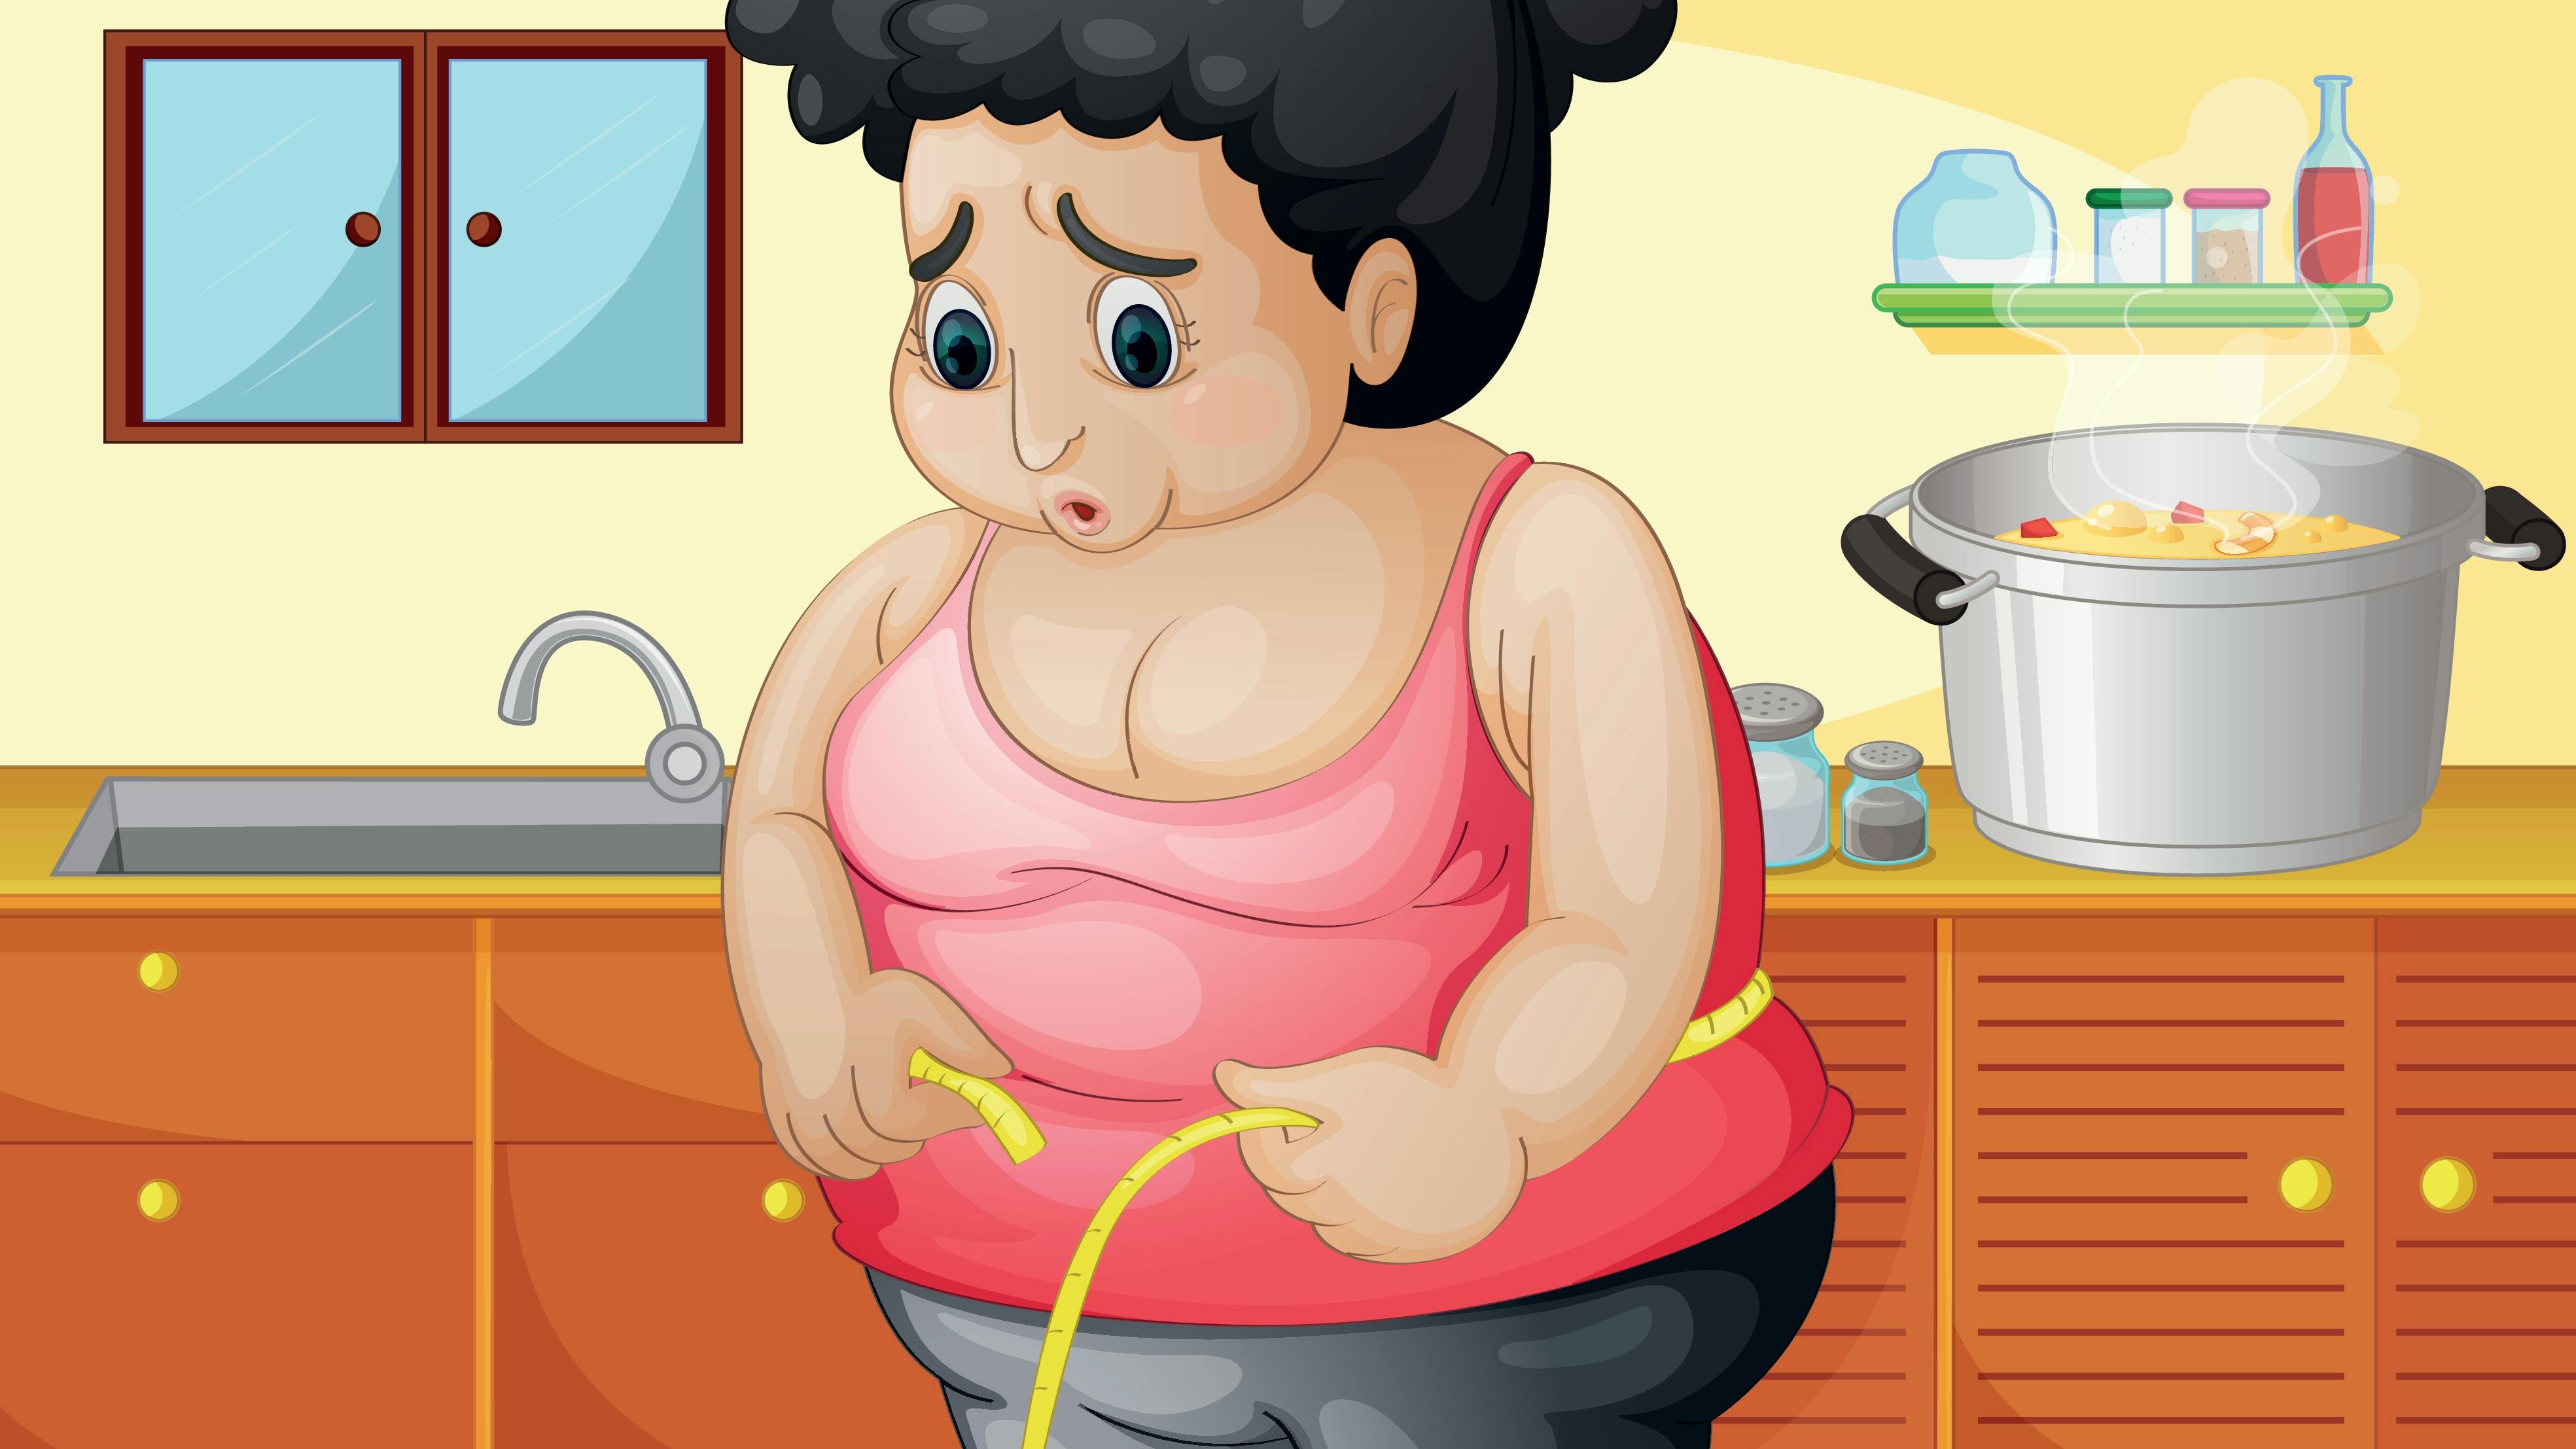 Tegning af overvægtig kvinde med målebånd i køkken.